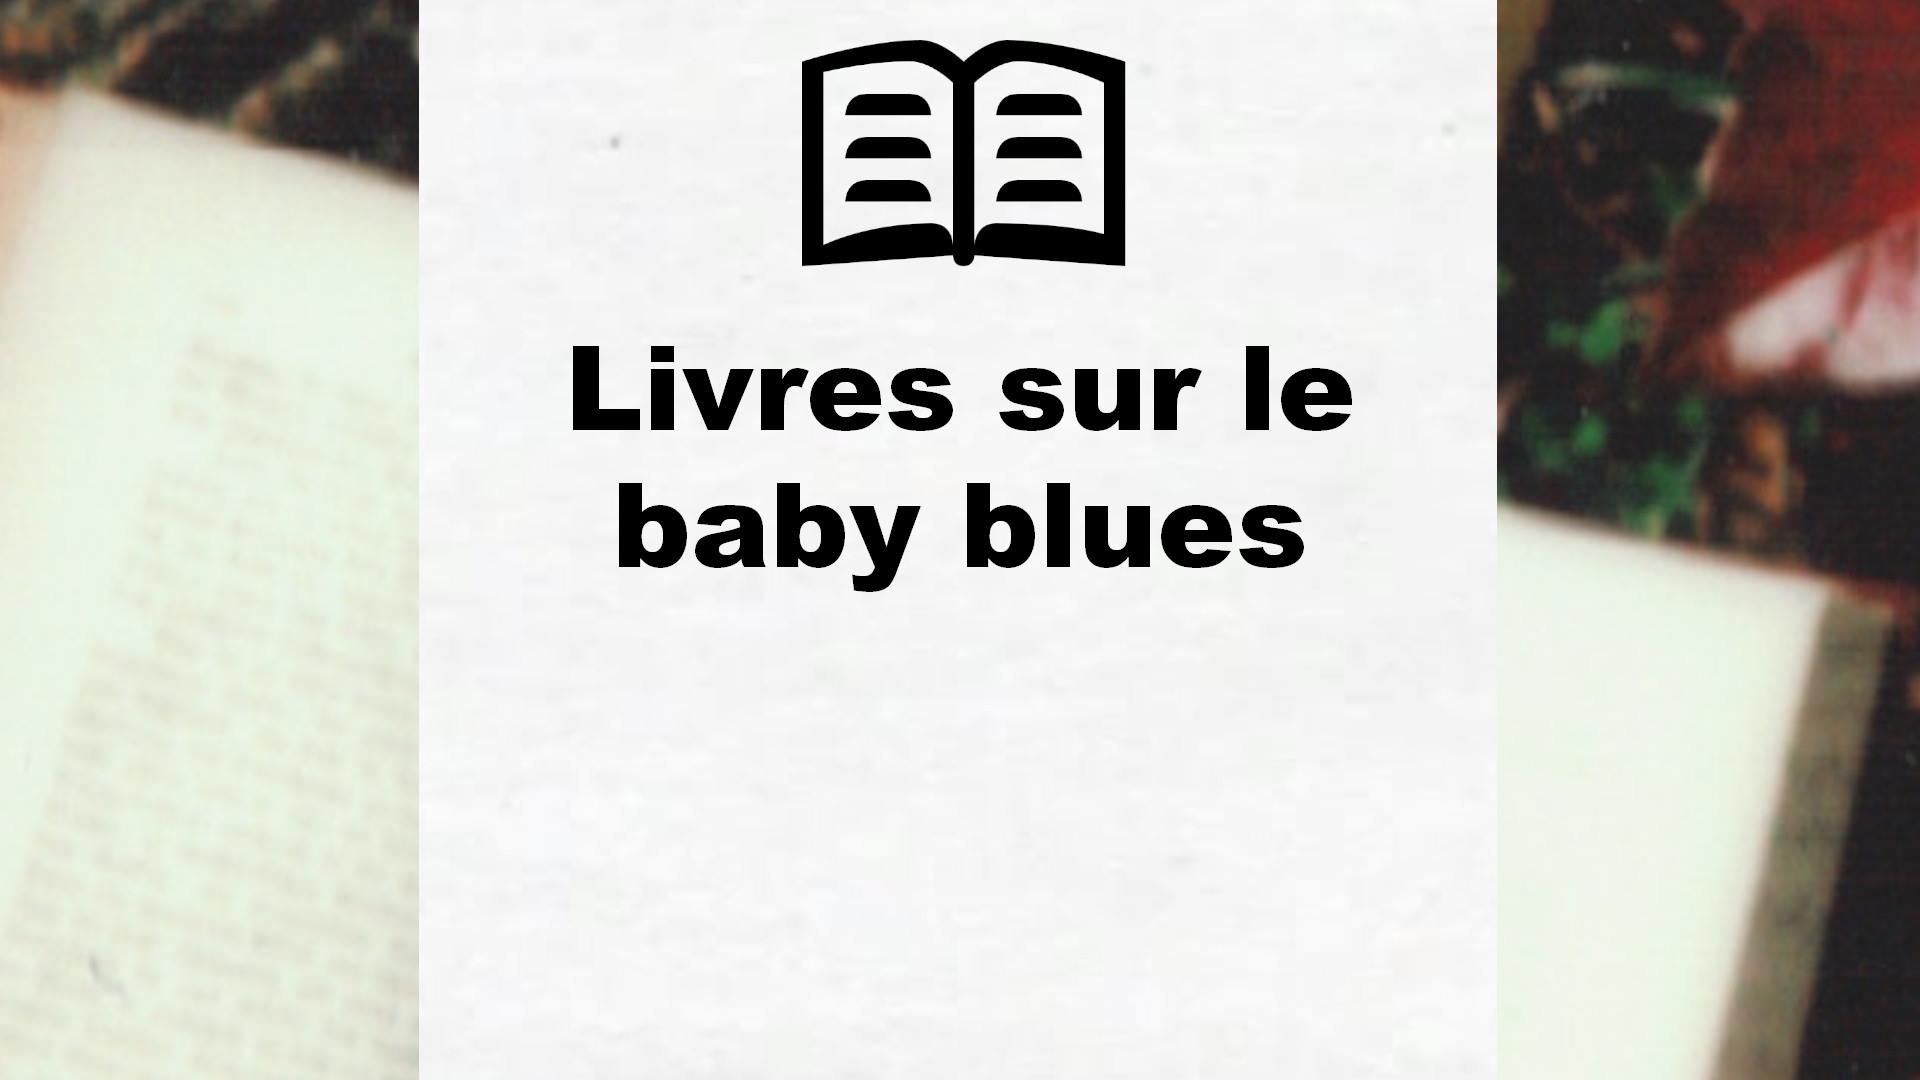 Livres sur le baby blues